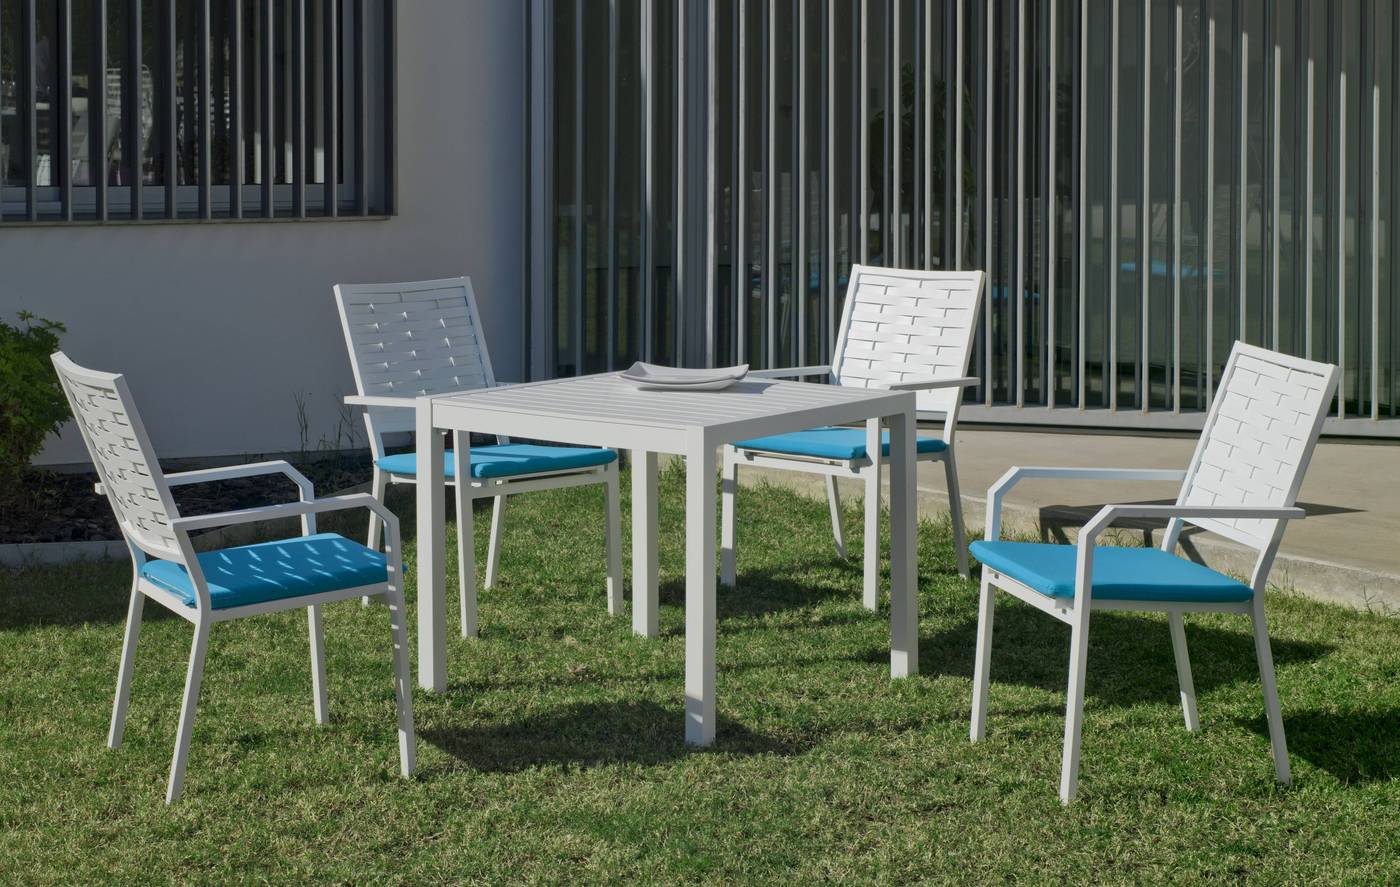 Set Aluminio Palma-Augusta 90-4 - Conjunto de aluminio luxe para jardín o terraza: Mesa cuadrada 90 cm. + 4 sillones. Disponible en color blanco, bronce, antracita y champagne.